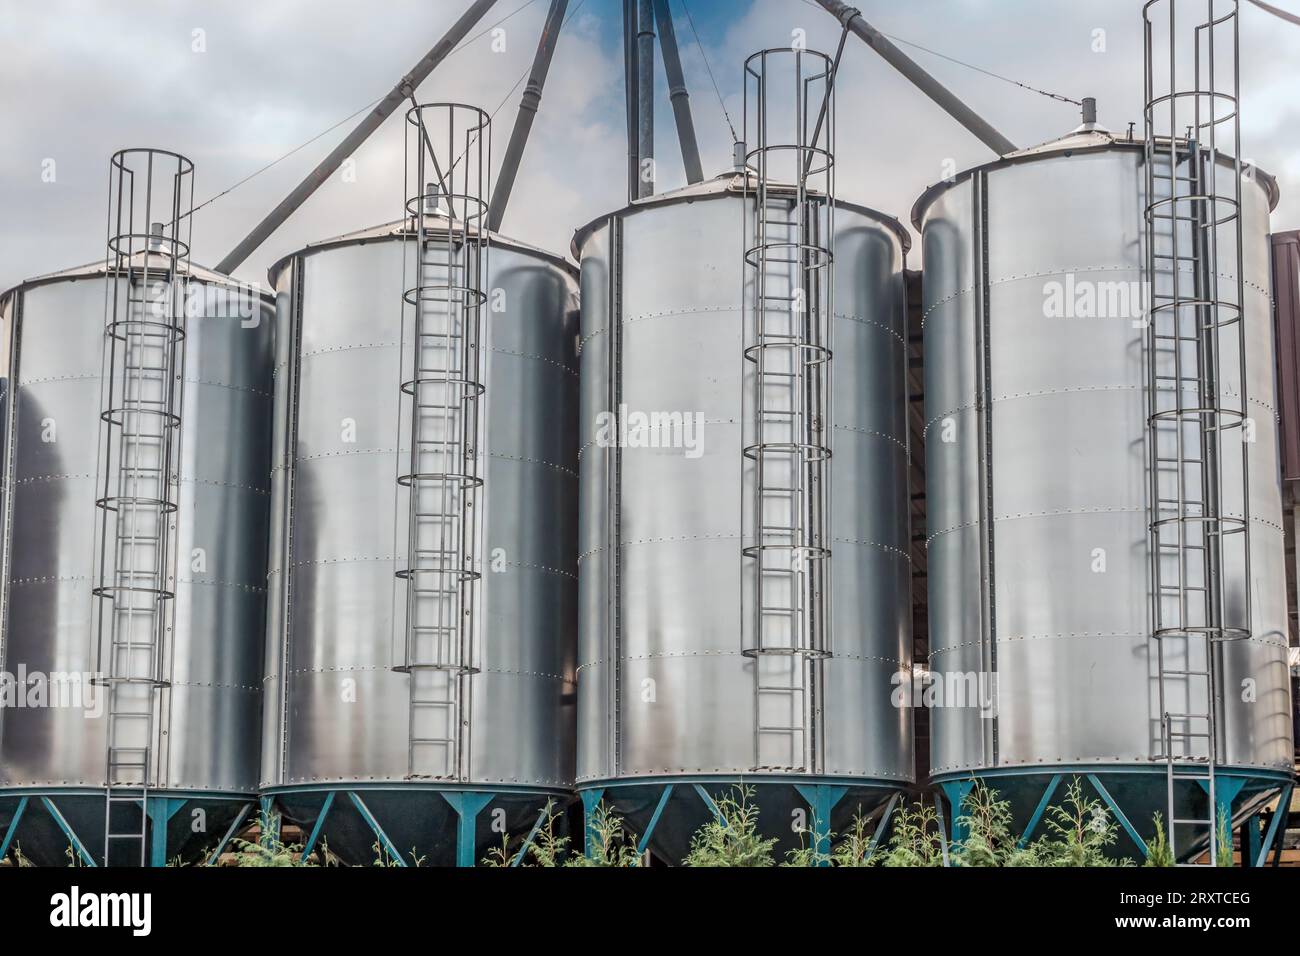 Gros plan de quatre silos à grains Banque D'Images